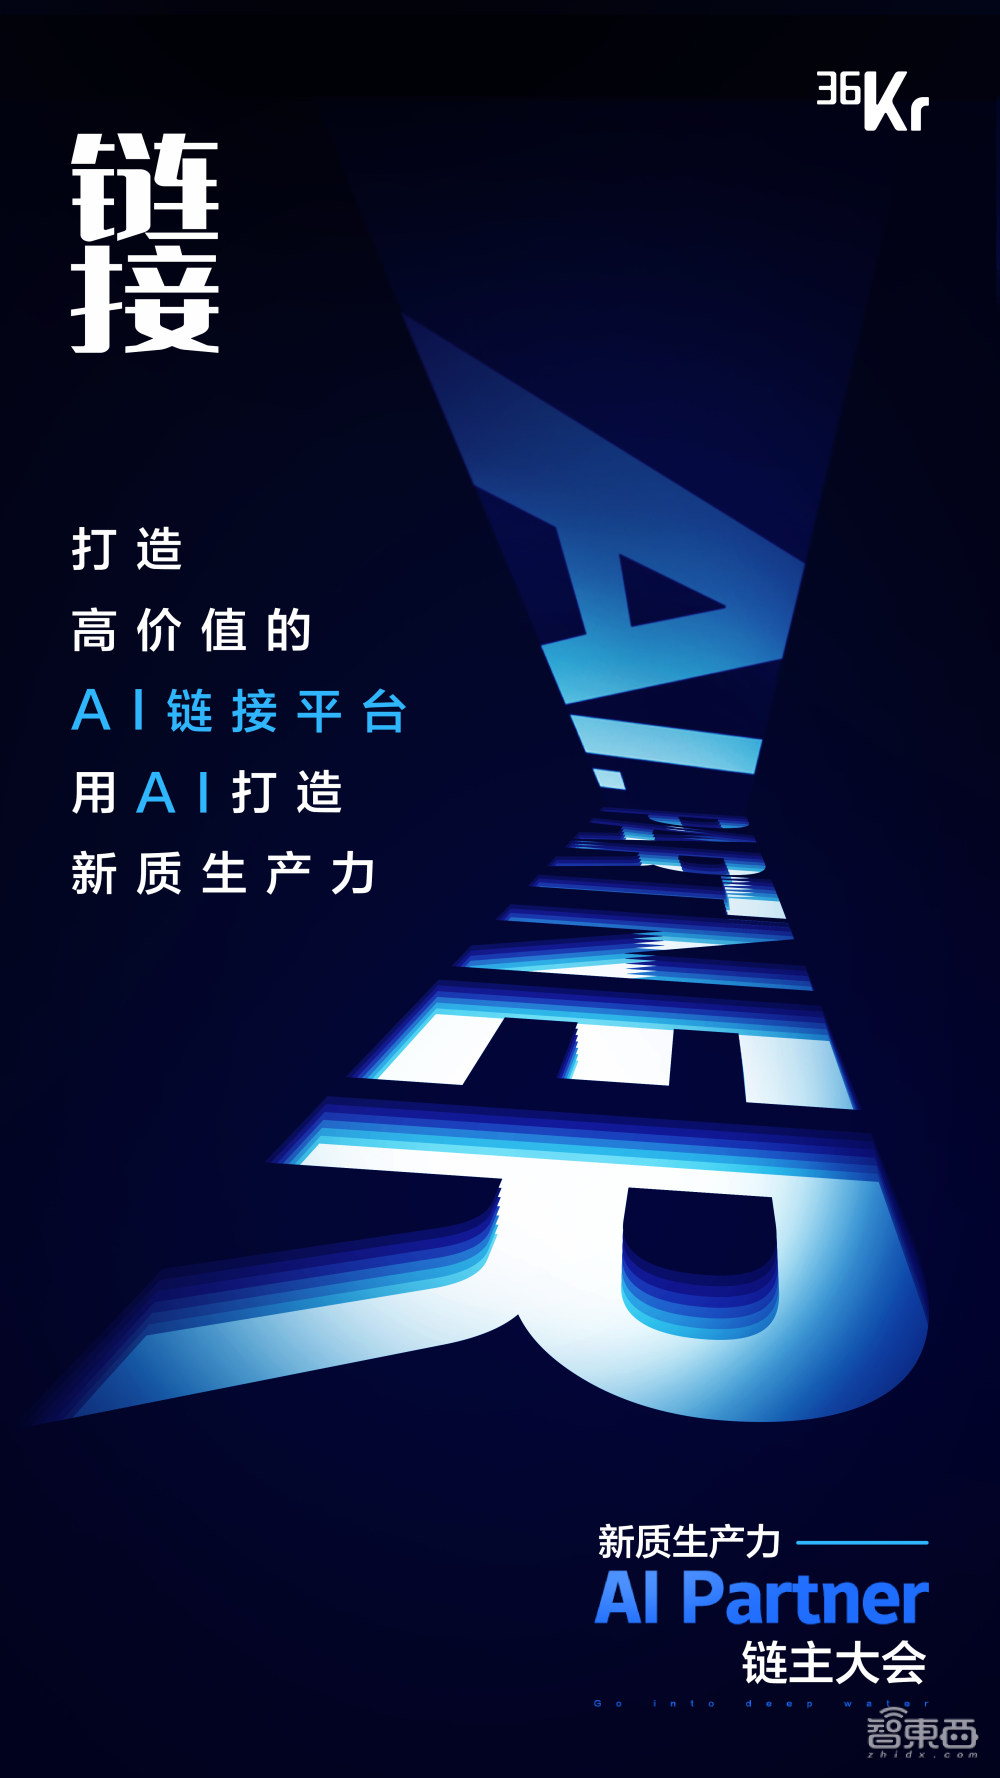 新质生产力·AI Partner链主大会将于4月28日在北京举办